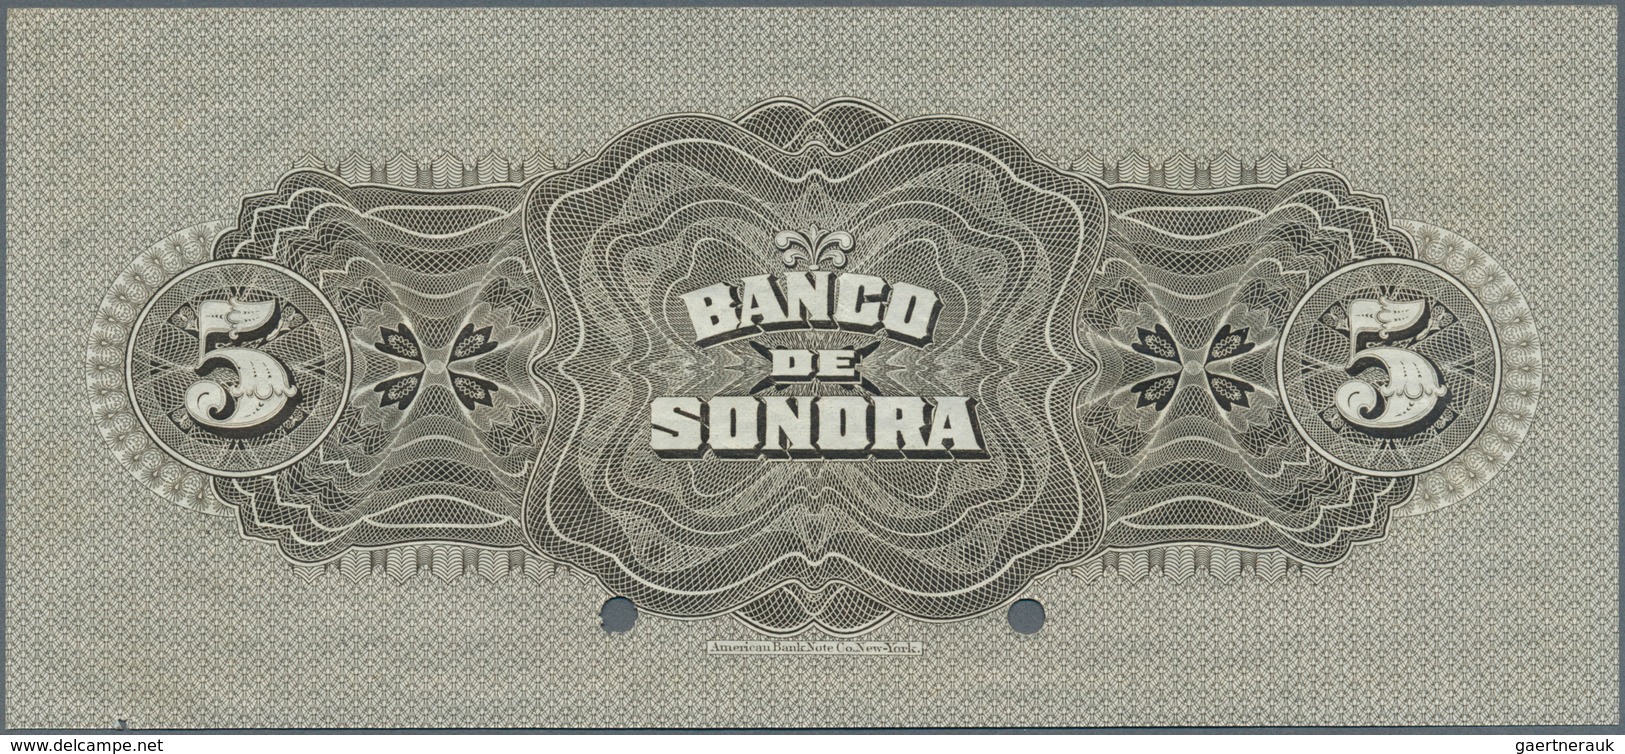 02027 Mexico: El Banco De Sonora 5 Pesos 1911 SPECIMEN, P.S419s, Punch Hole Cancellation And Red Overprint - Mexique